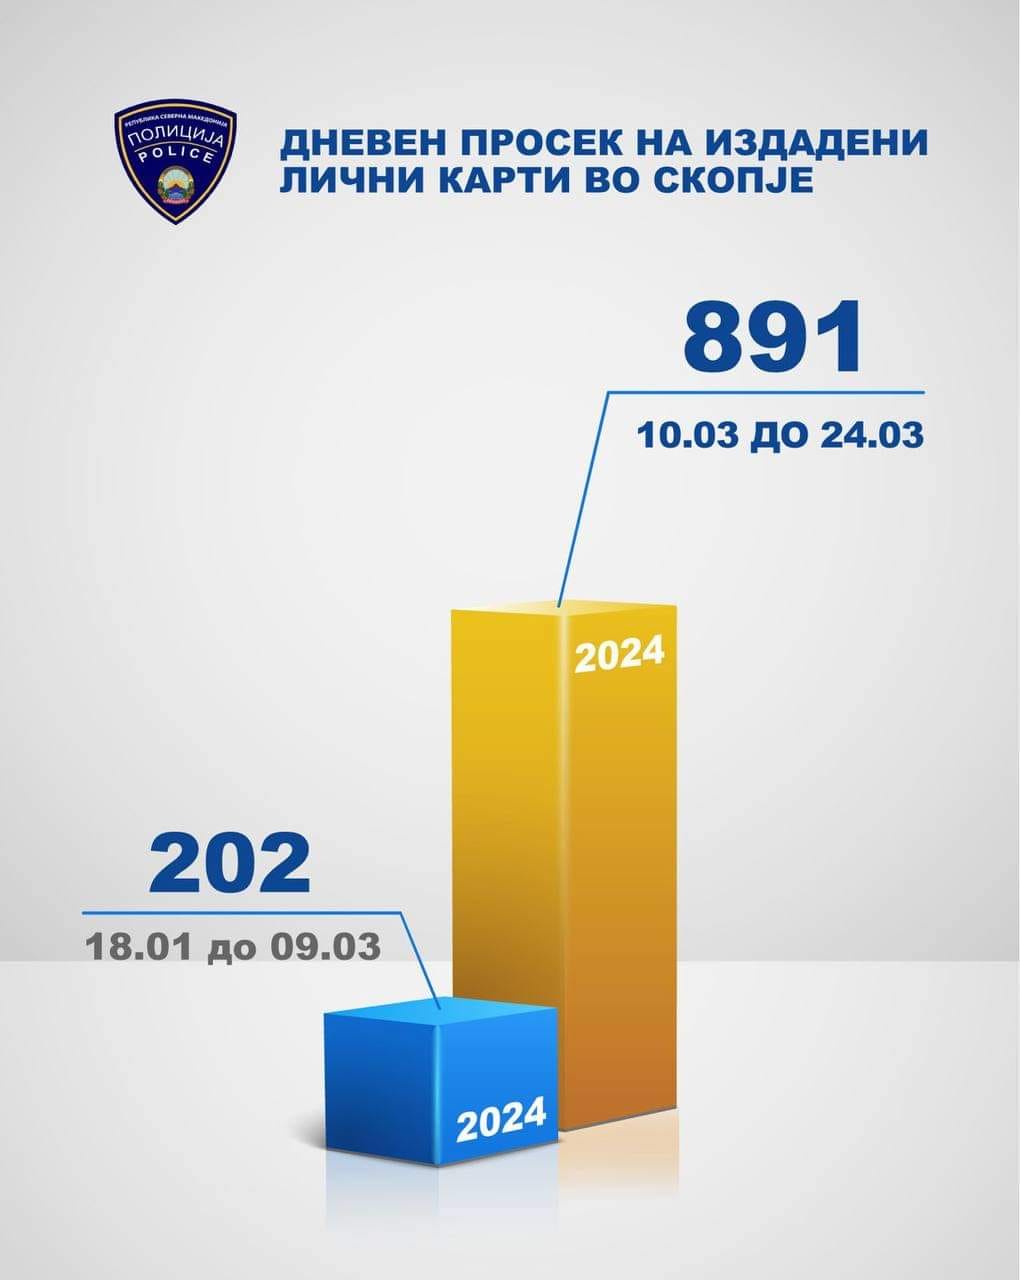 Тошковски: Со новиот модел на достава на личните карти на граѓаните, доставени се 4,5 пати повеќе